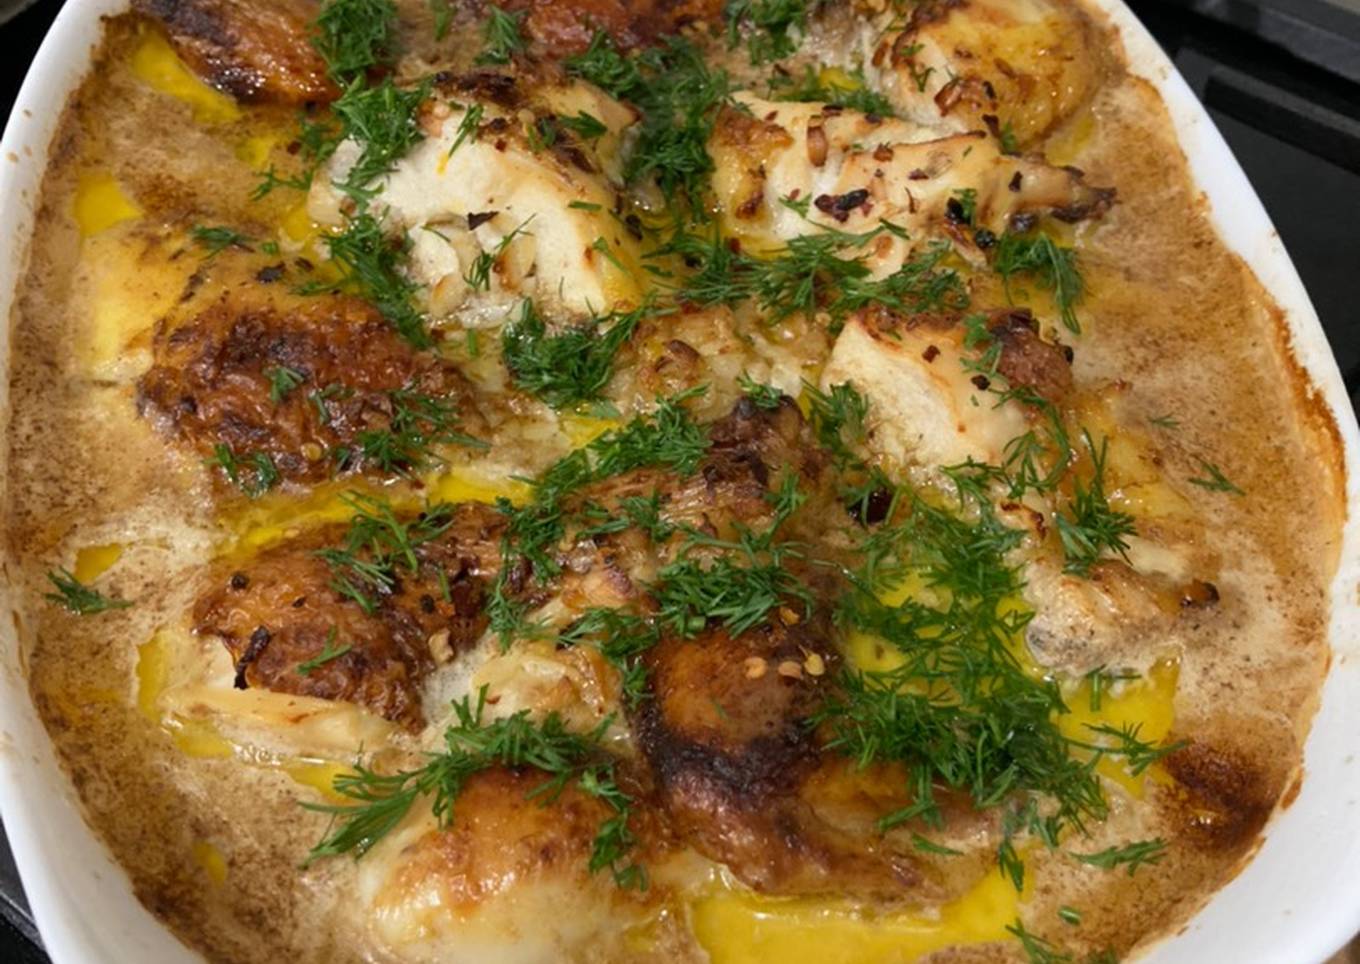 Shqmeruli – Georgian chicken with garlic 🧄